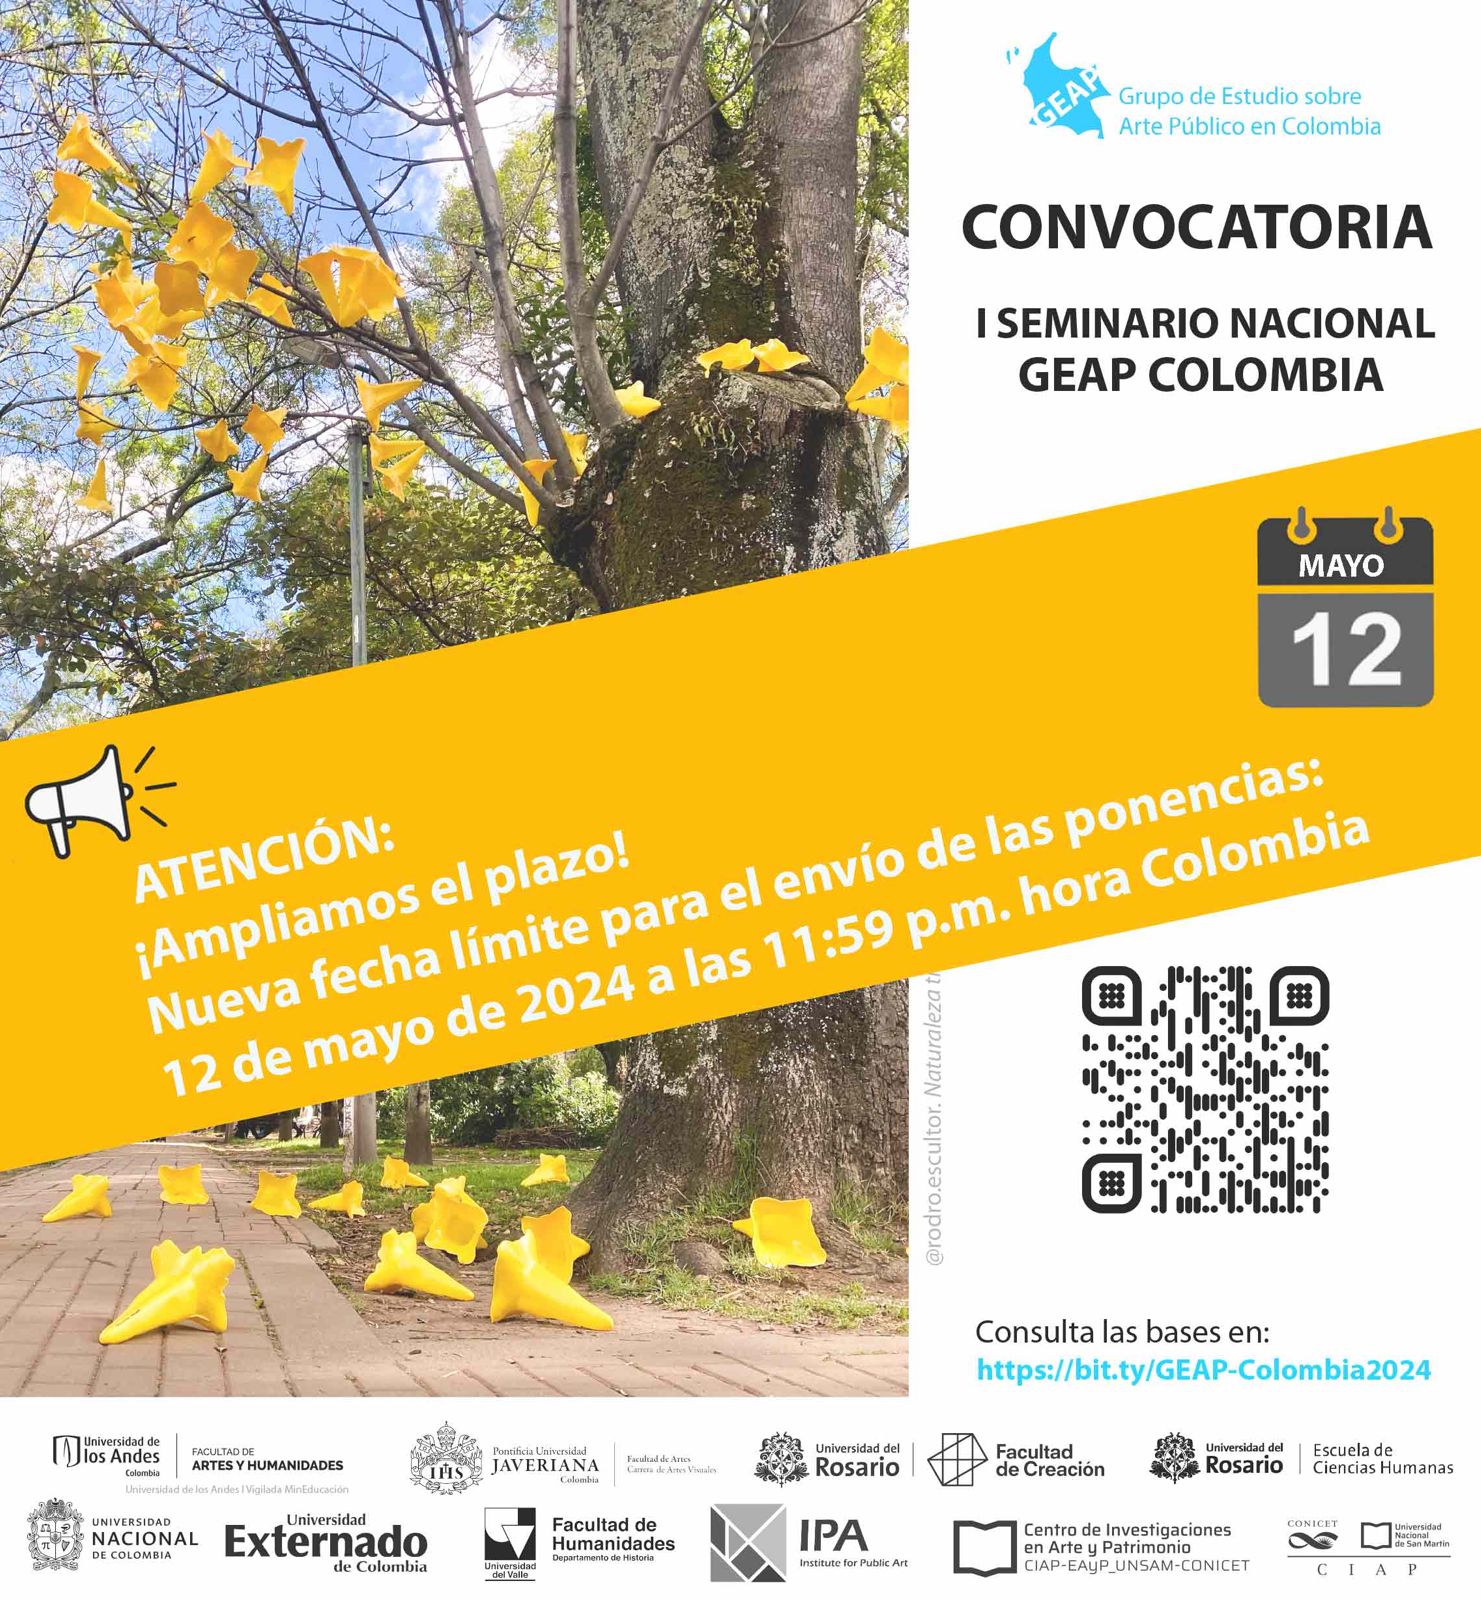 Se realizará los días 19, 20 y 21 de septiembre de 2024 en Bogotá